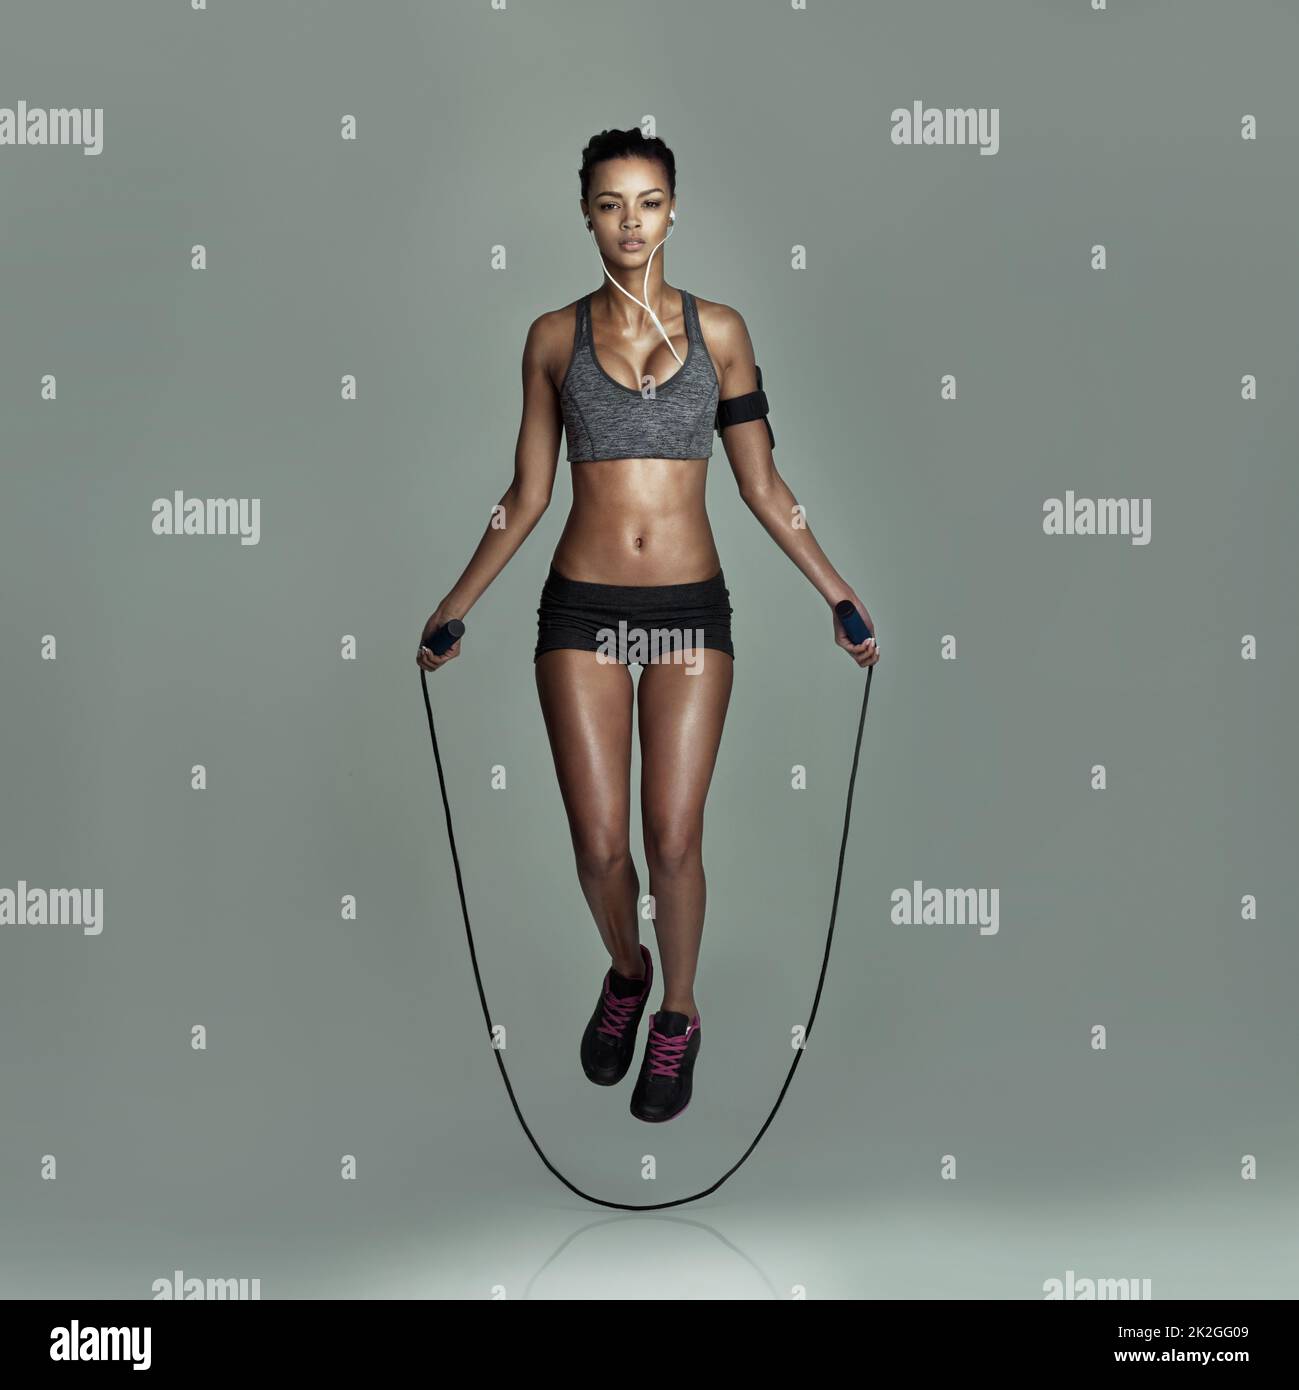 Überspringen Sie nie ein Workout. Studioaufnahme einer jungen Frau, die vor grauem Hintergrund springt. Stockfoto